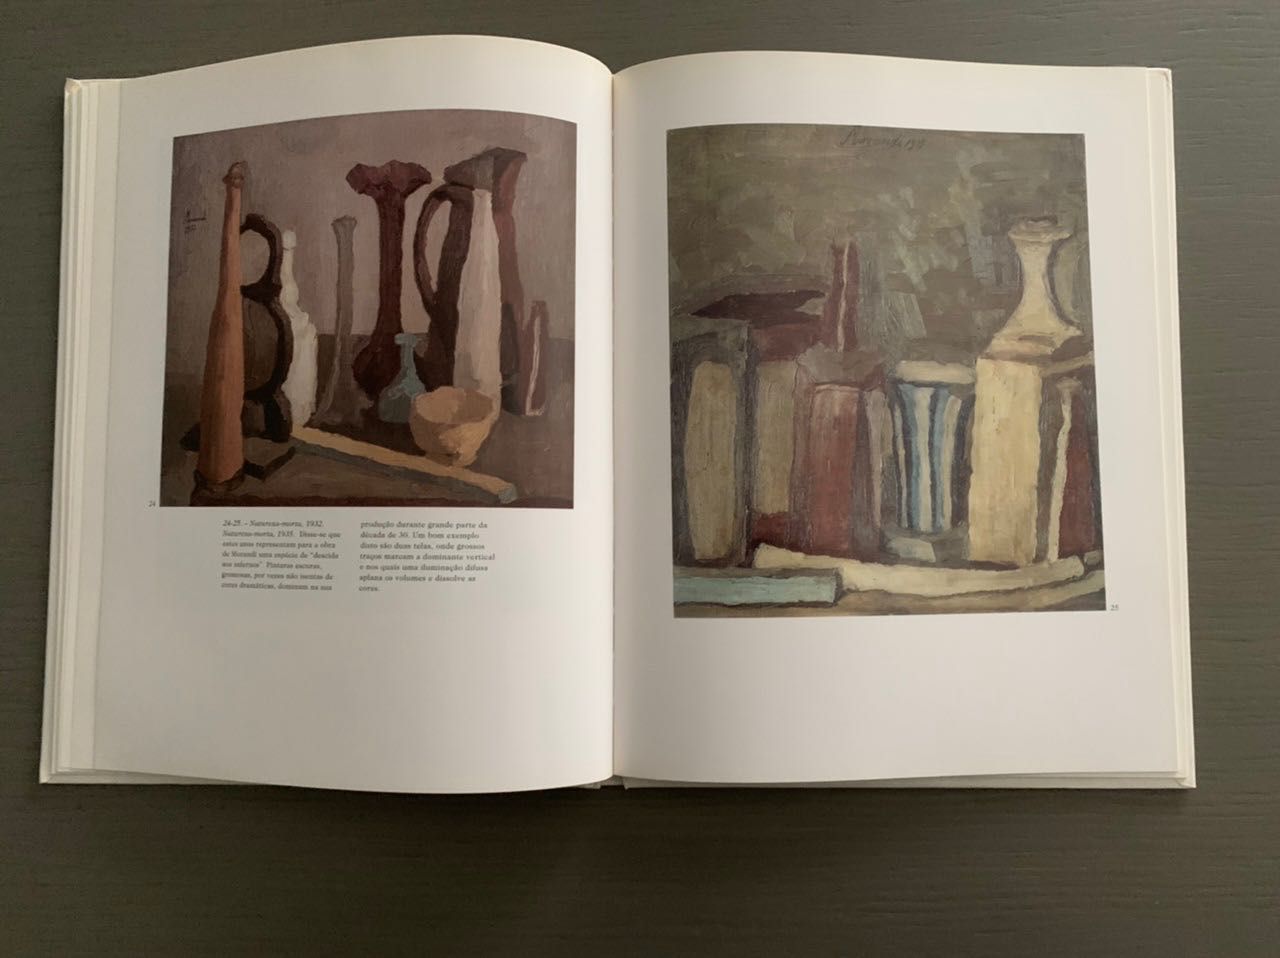 Grandes pintores do século XX - Giorgio Morandi